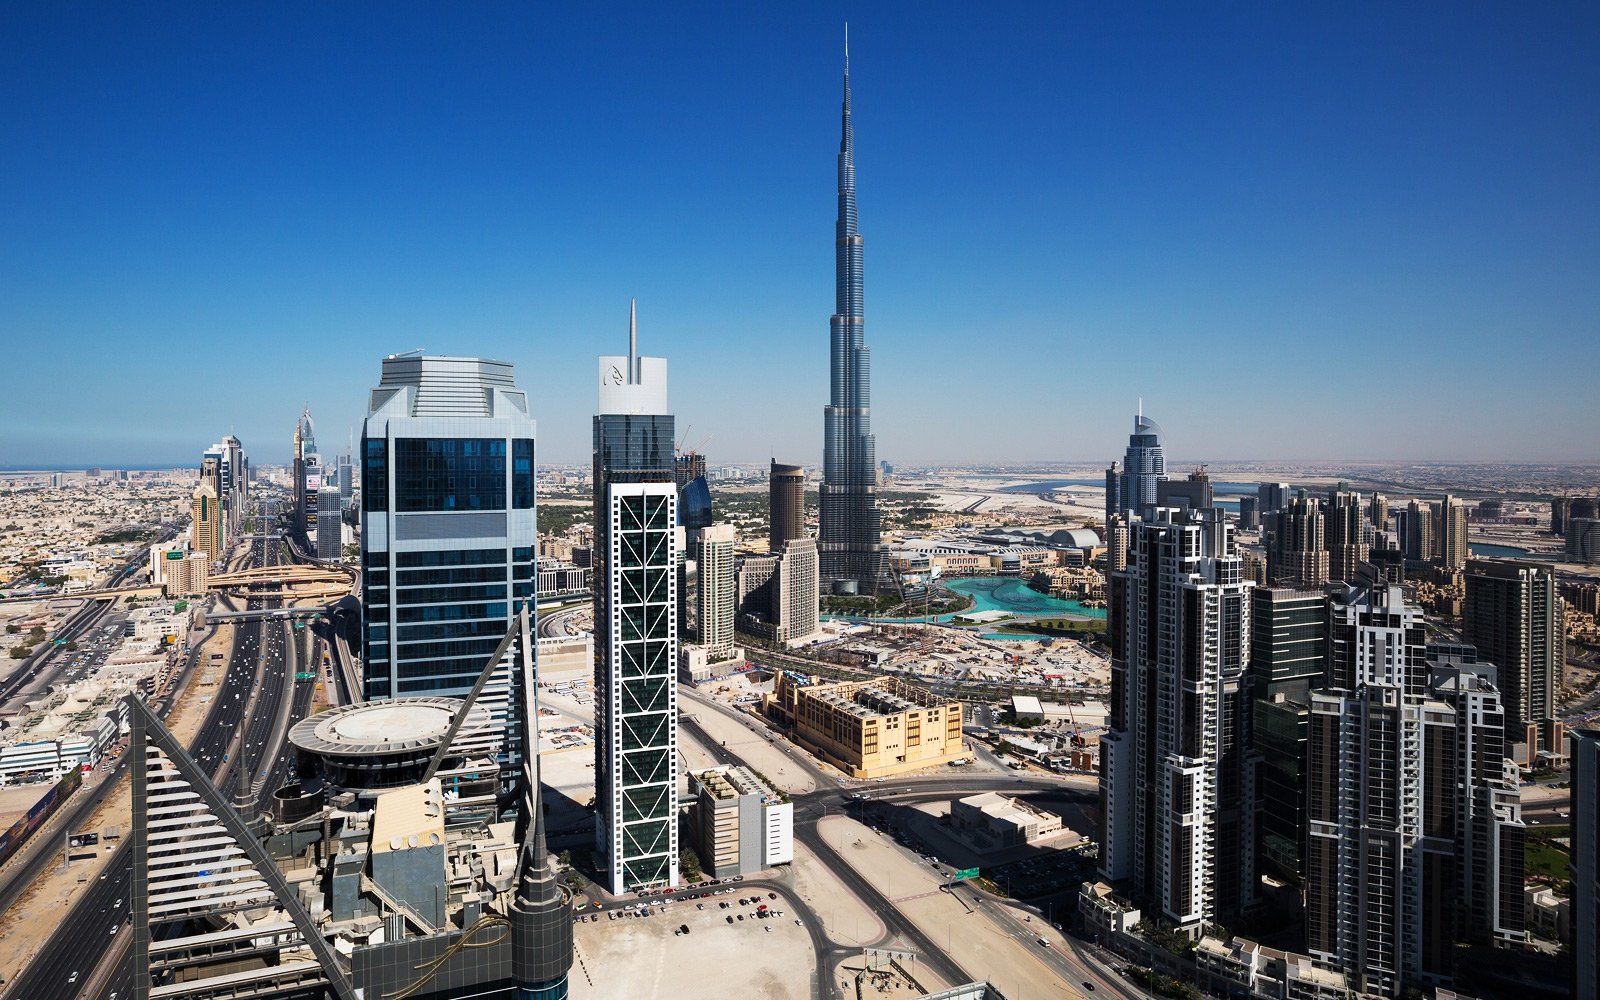 MBK Tower, Dubai